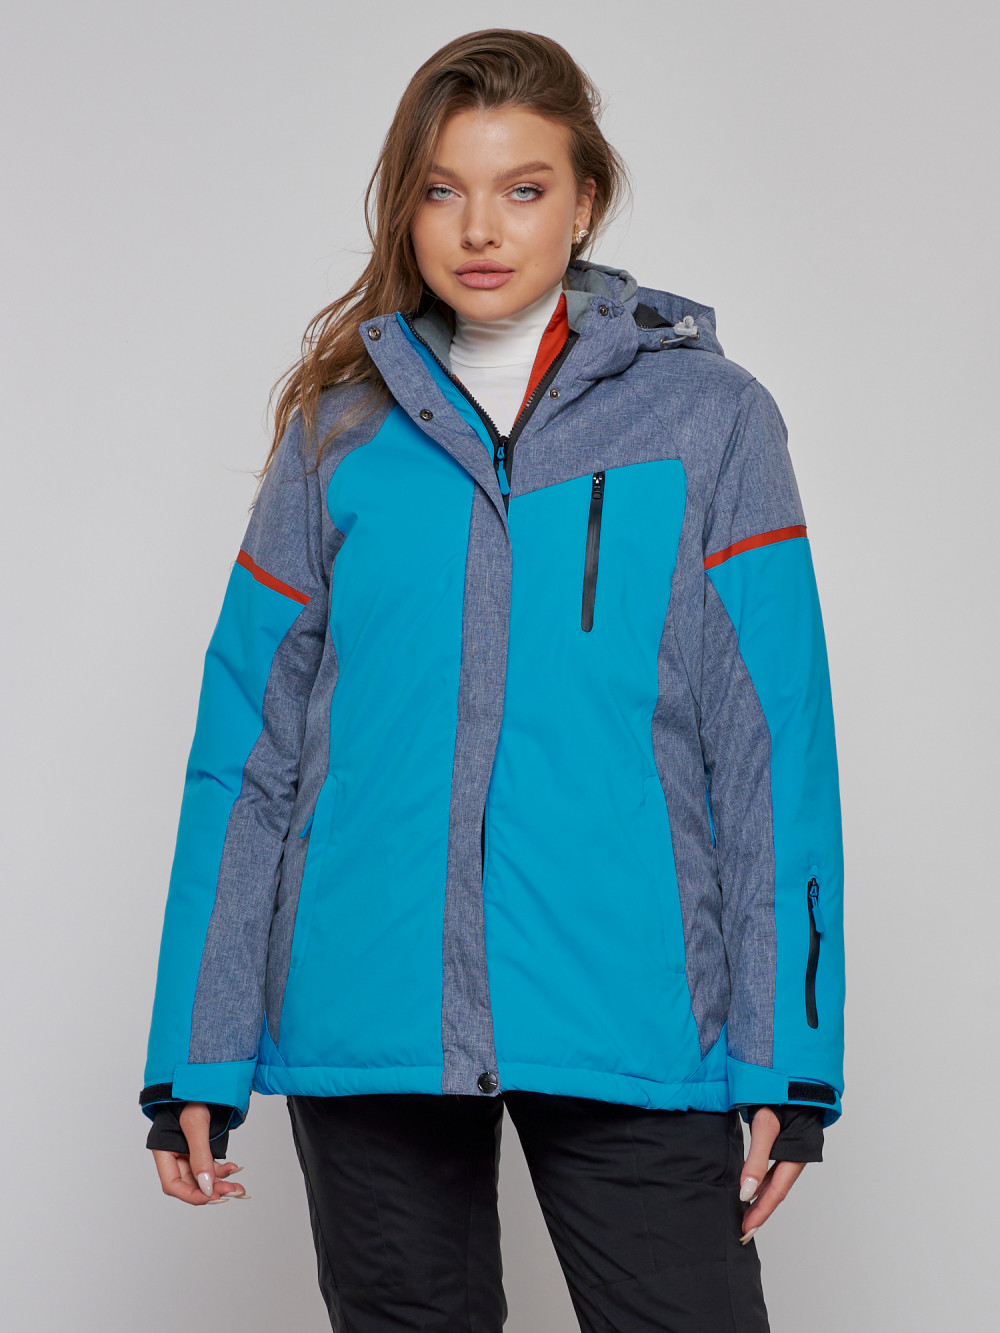 Купить оптом Горнолыжная куртка женская зимняя большого размера синего цвета 2272-3S в Екатеринбурге